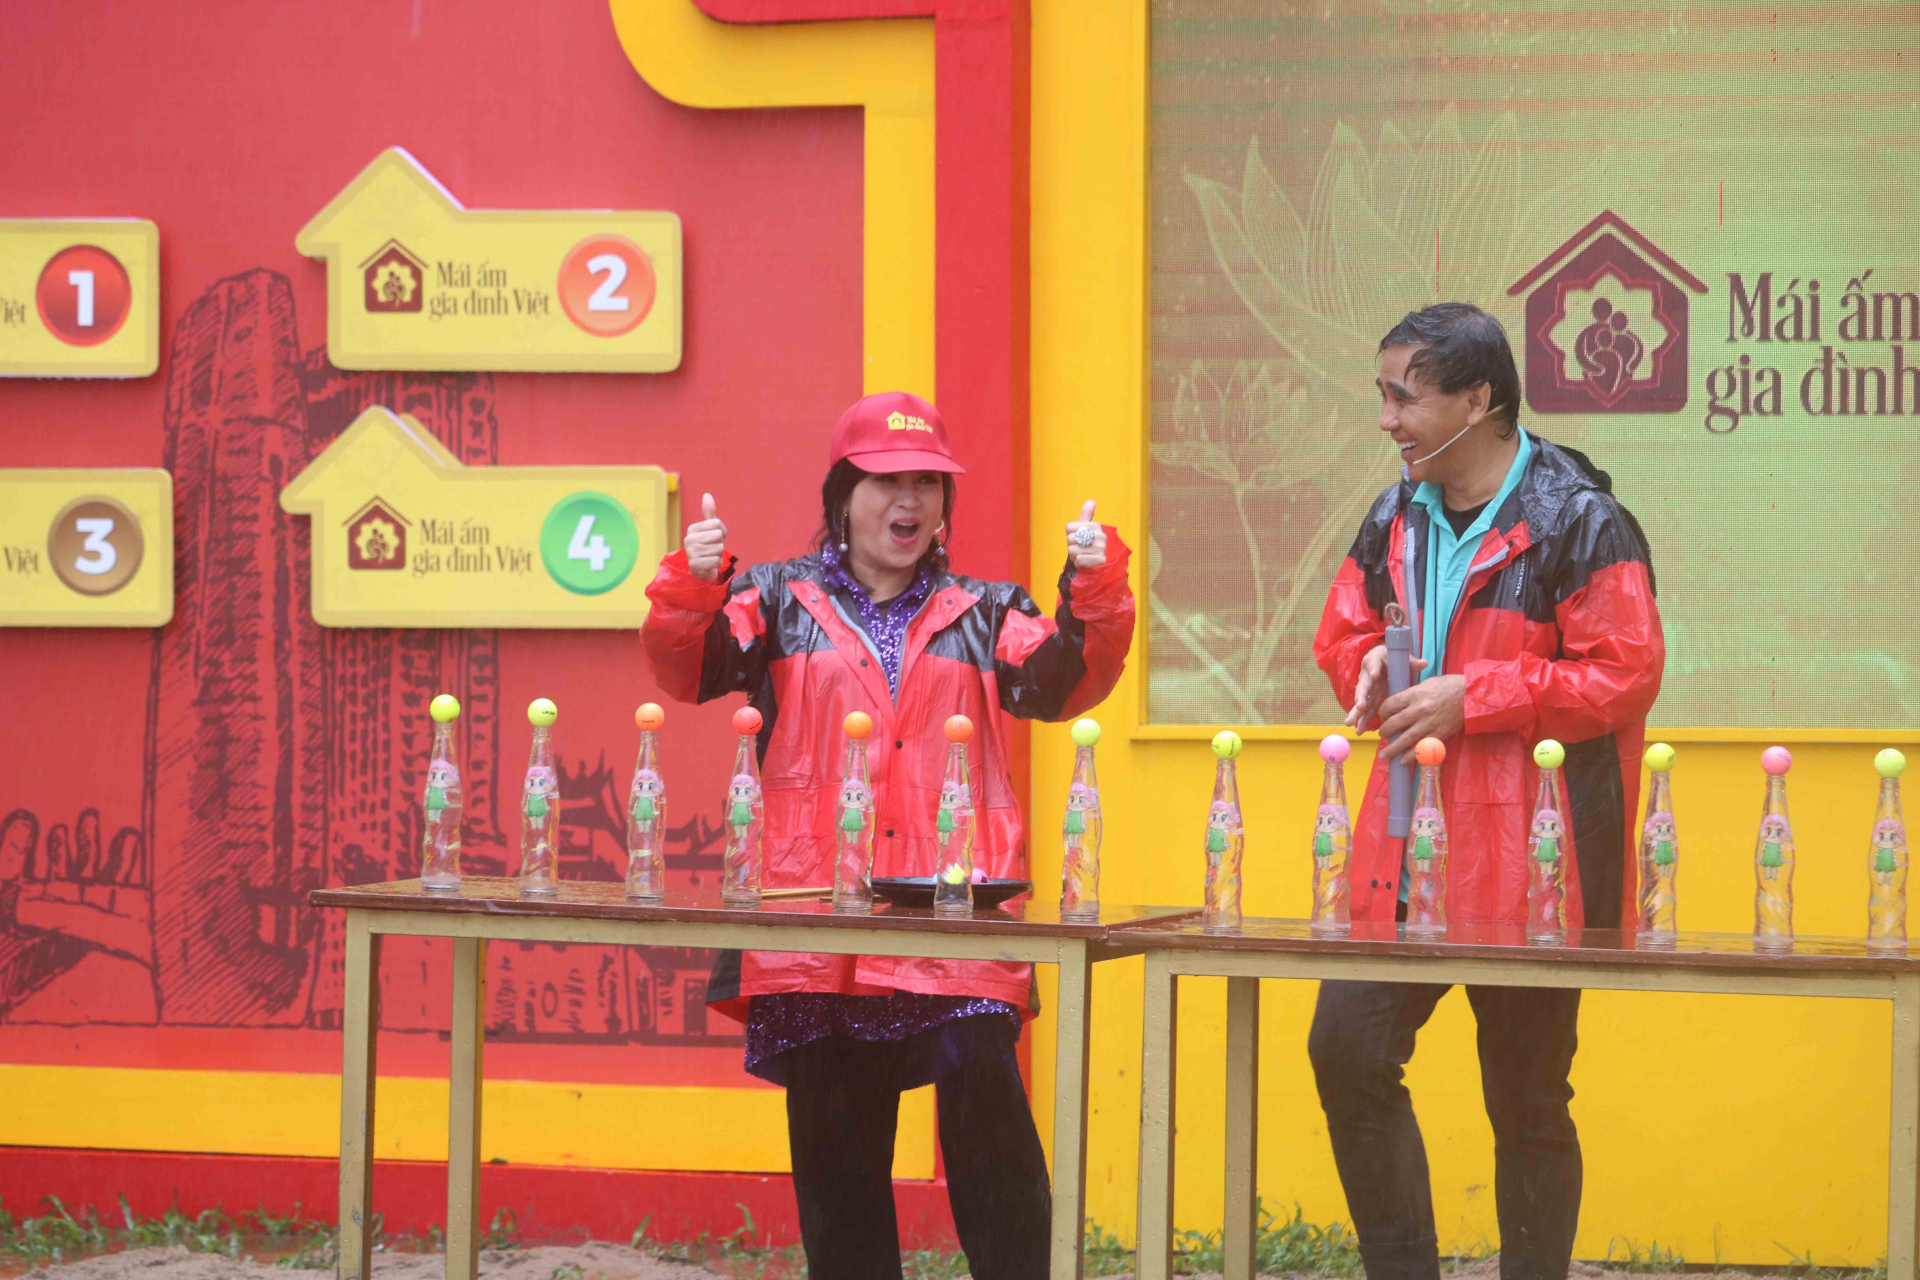 NSND Thanh Lam dầm mưa, nổ lực hết mình cùng Ali Hoàng Dương chiến thắng thử thách để đạt giải thưởng cho trẻ em nghèo - ảnh 1